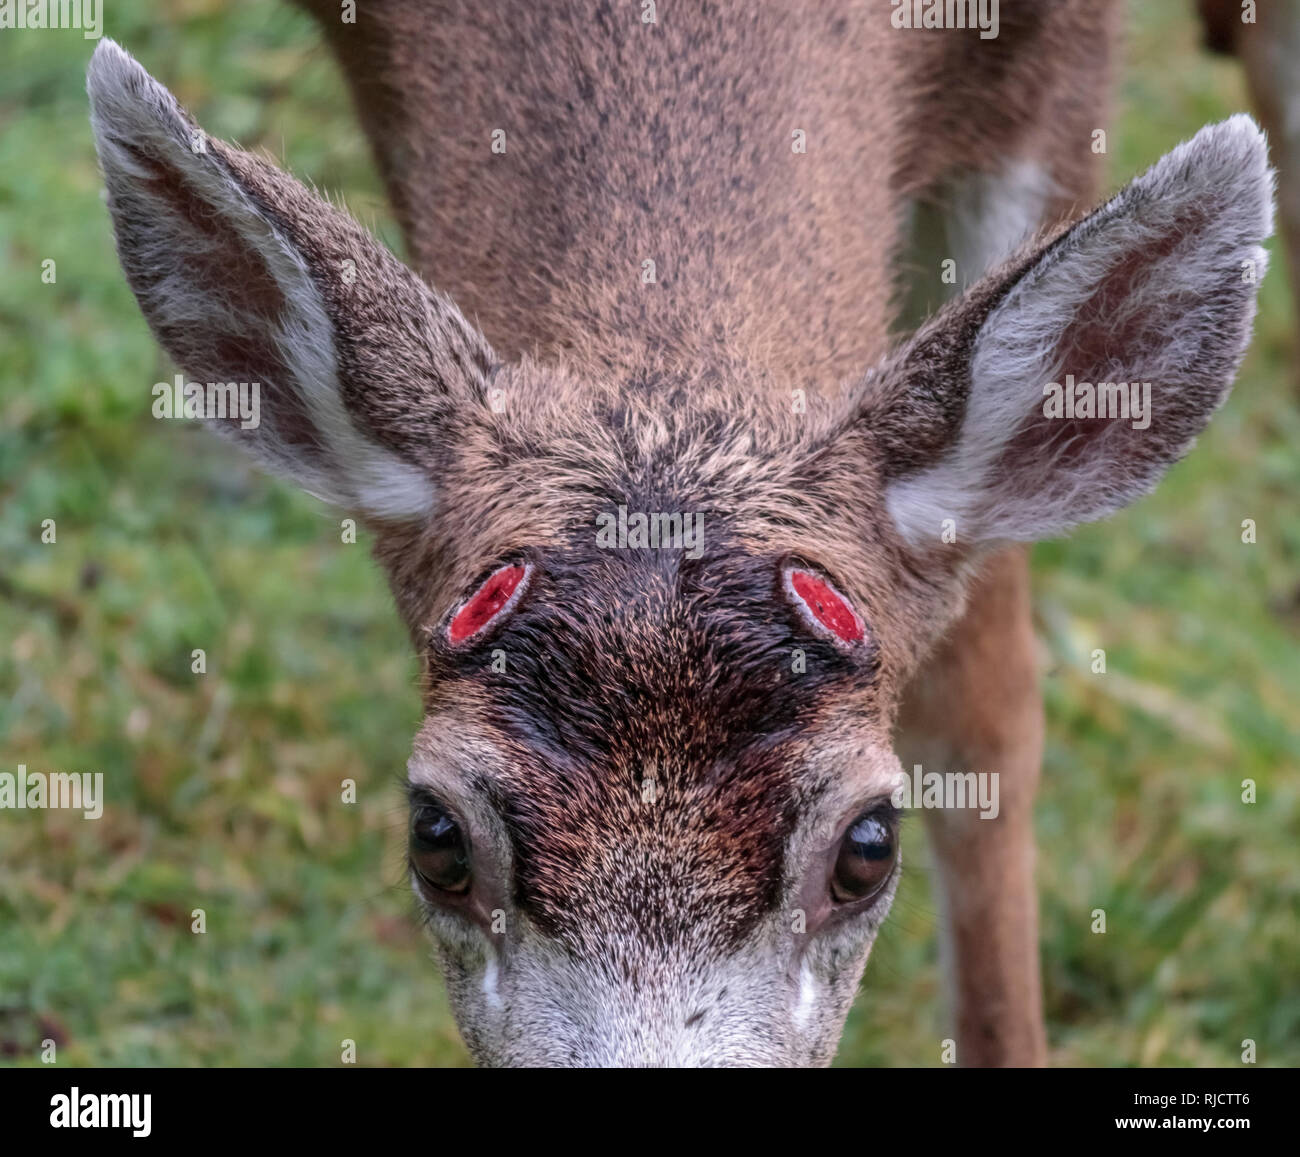 Fermer la vue d'un cerf mâle, à la recherche jusqu'à l'appareil photo, qui vient de verser son panache, révélant deux pédicules rouge sanglant (points de fixation) sur sa tête. Banque D'Images